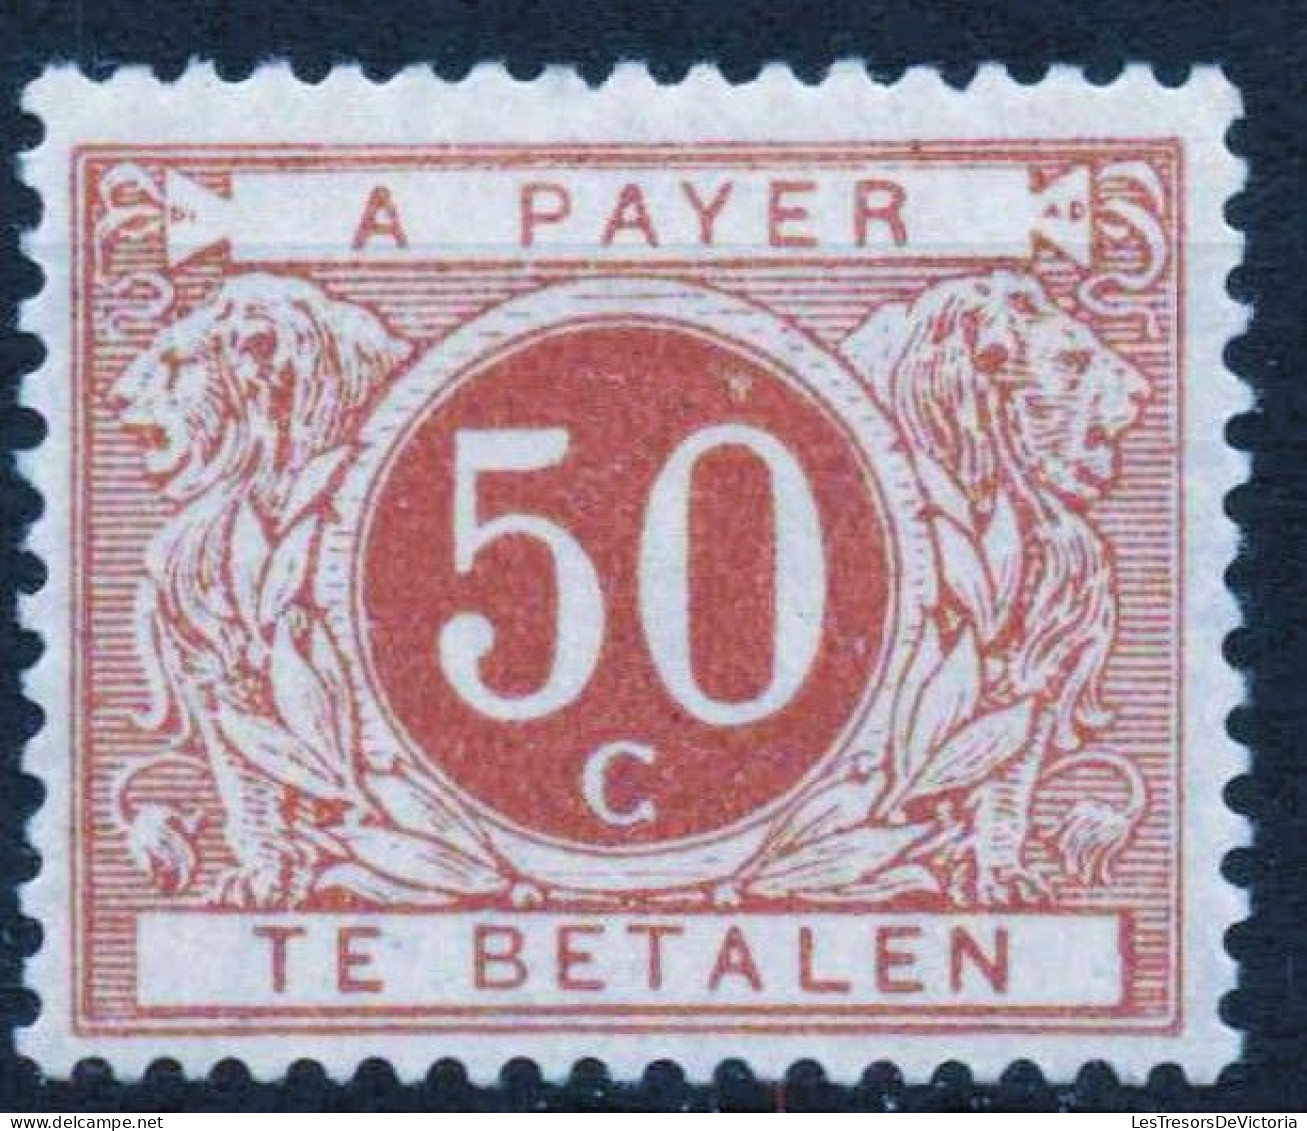 Timbres - Belgique - 1895 - Timbres Taxe - COB TX 8** Ocre Brun - Cote 130 - Francobolli